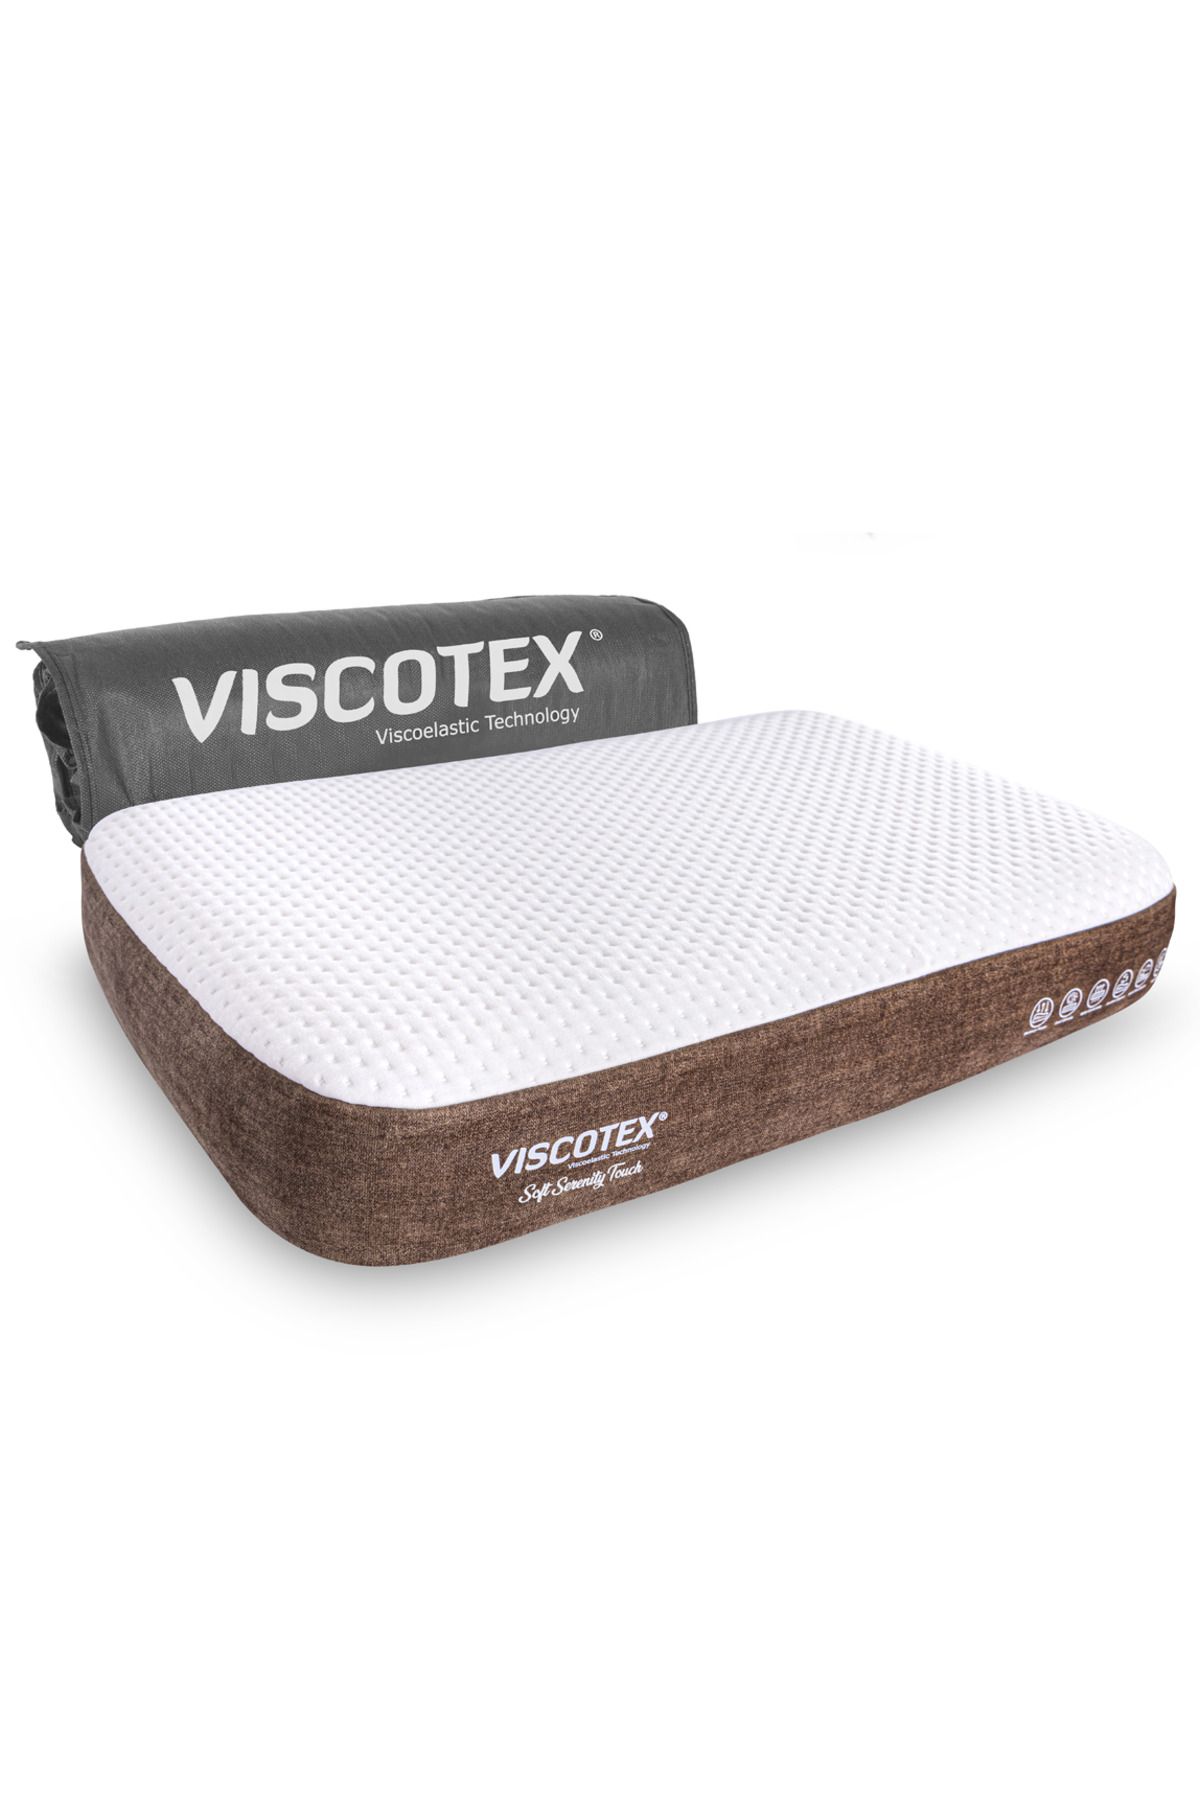 VİSCOTEX Soft Serenity Ergonomik Visco Yastık 65x43x12cm, Boyun Ağrıları İçin Yumuşak Hafızalı Baş Yastığı